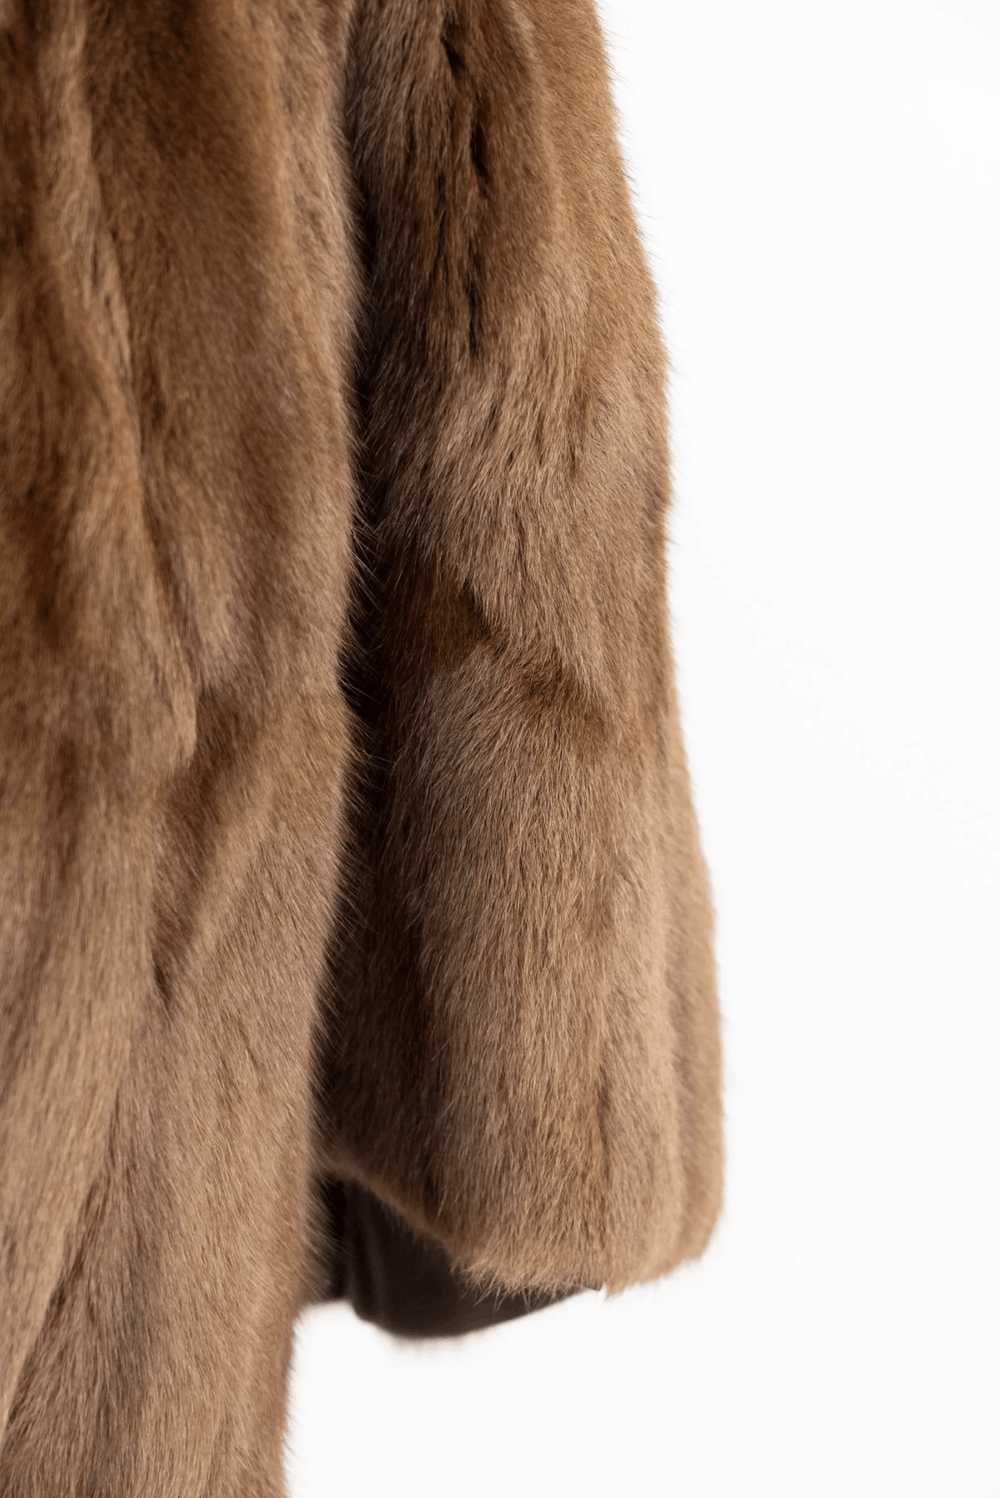 Vintage Vintage Bauman Furs Mink Short Length Cape - image 8